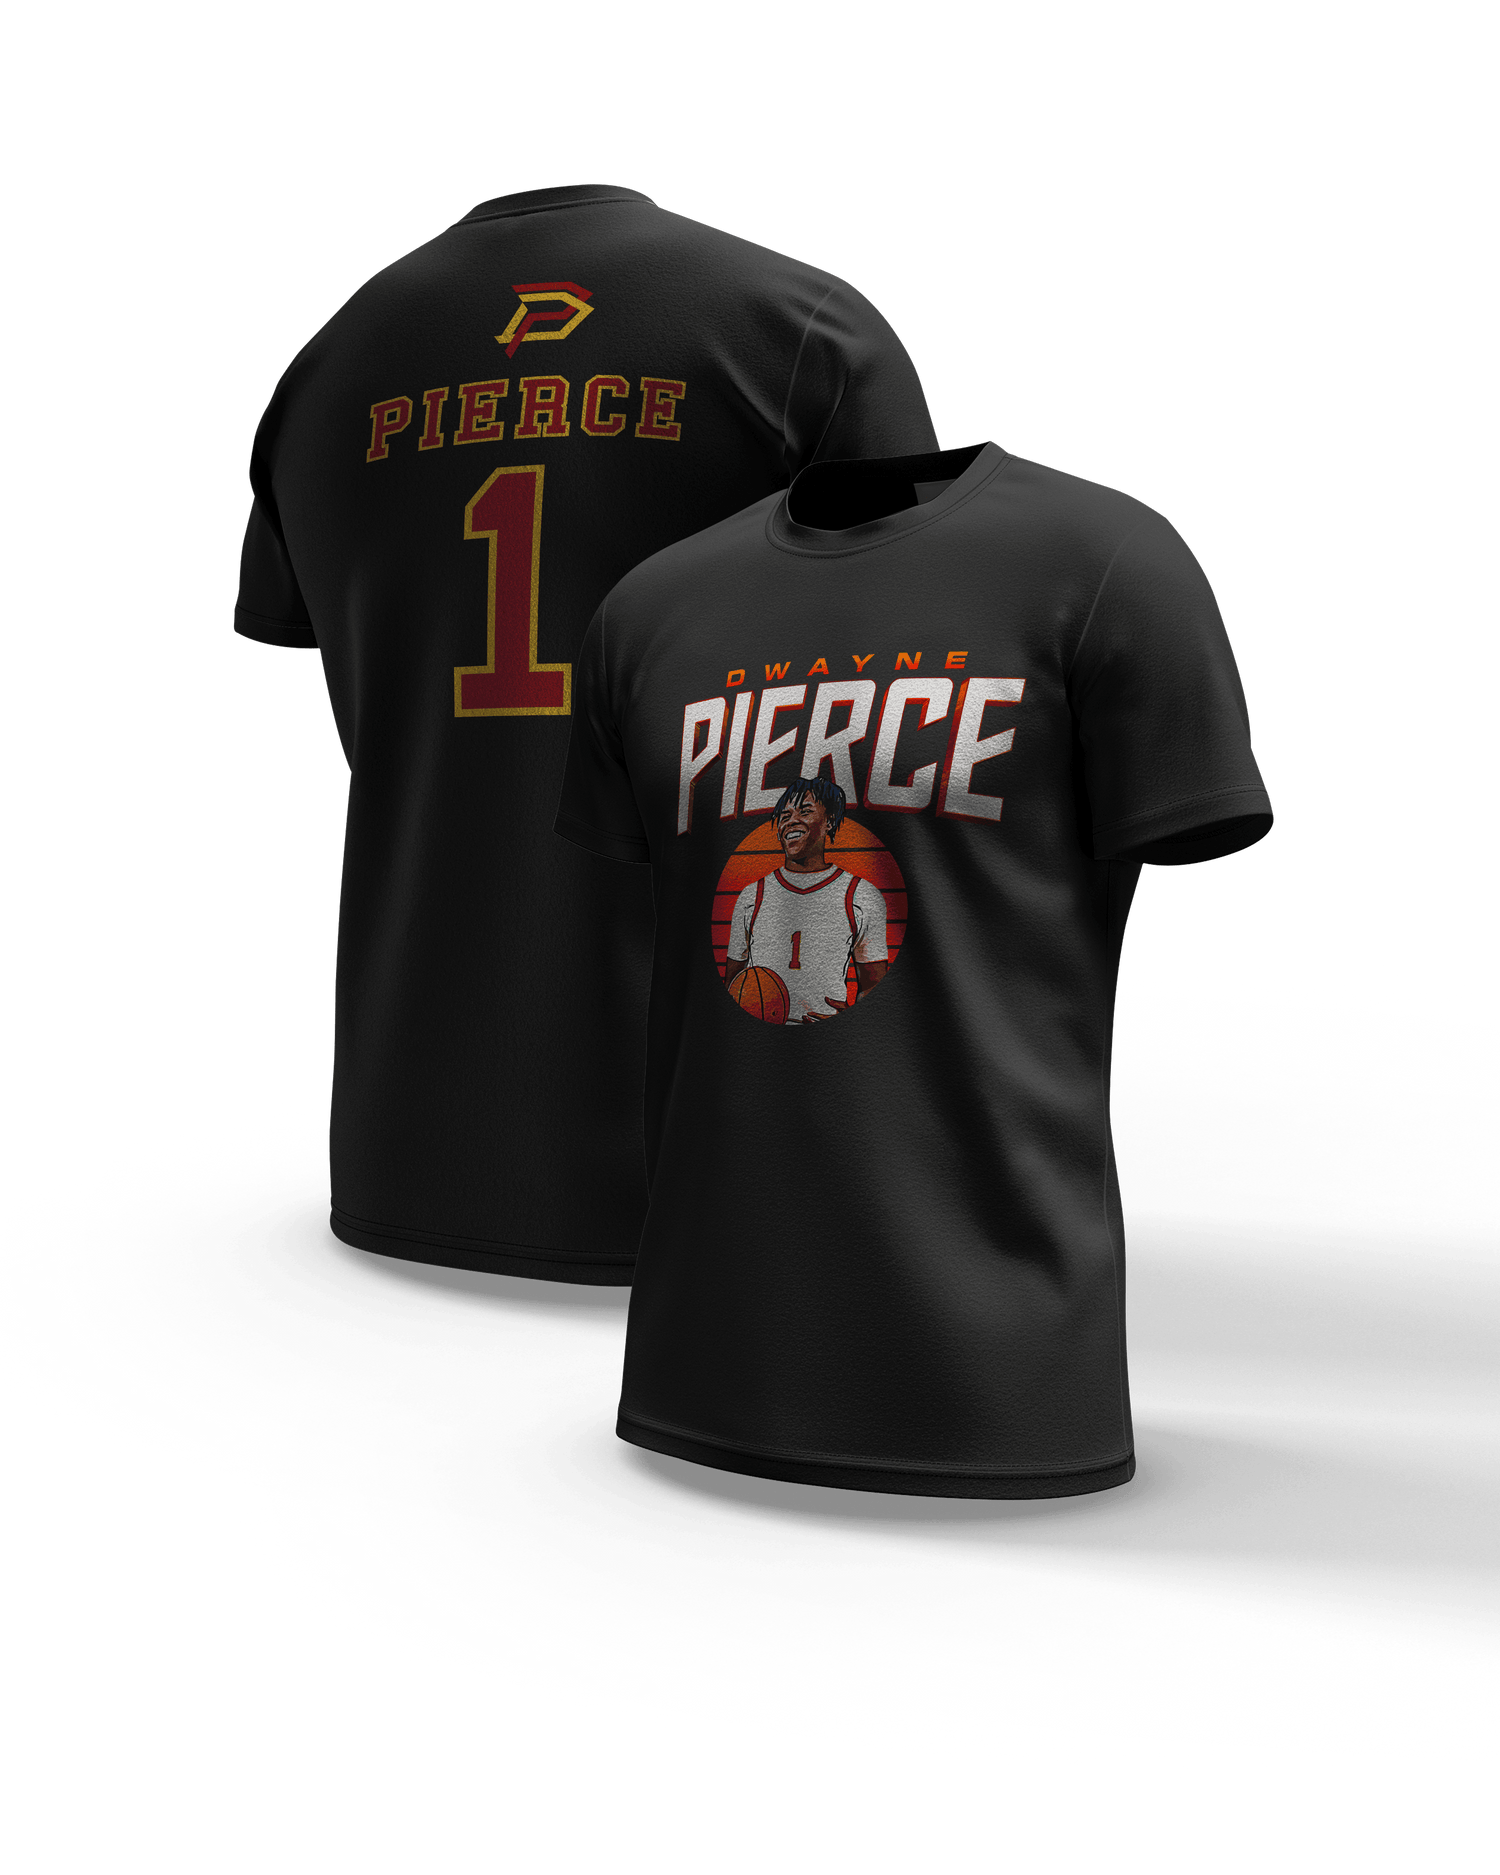 Dwayne Pierce "Jersey" t-shirt - Fan Arch